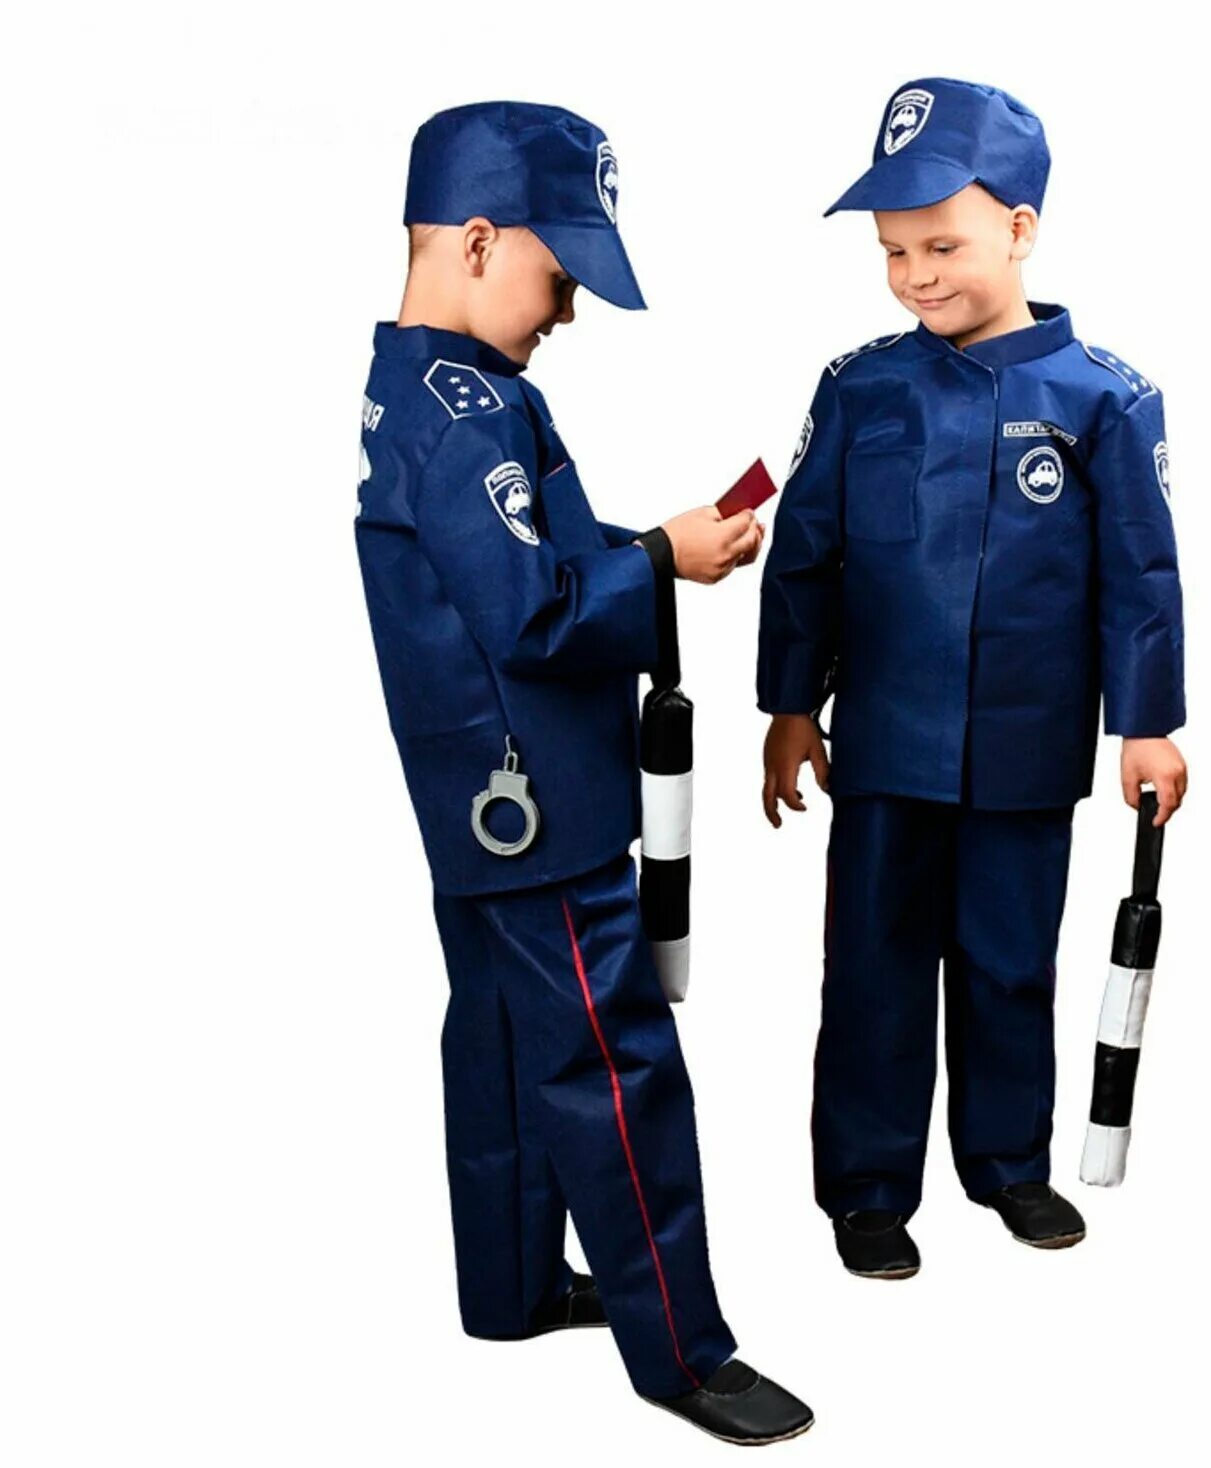 Купить форму дпс. Детский костюм ДПС. Костюм гаишника детский. Полицейский костюм ДПС детский.